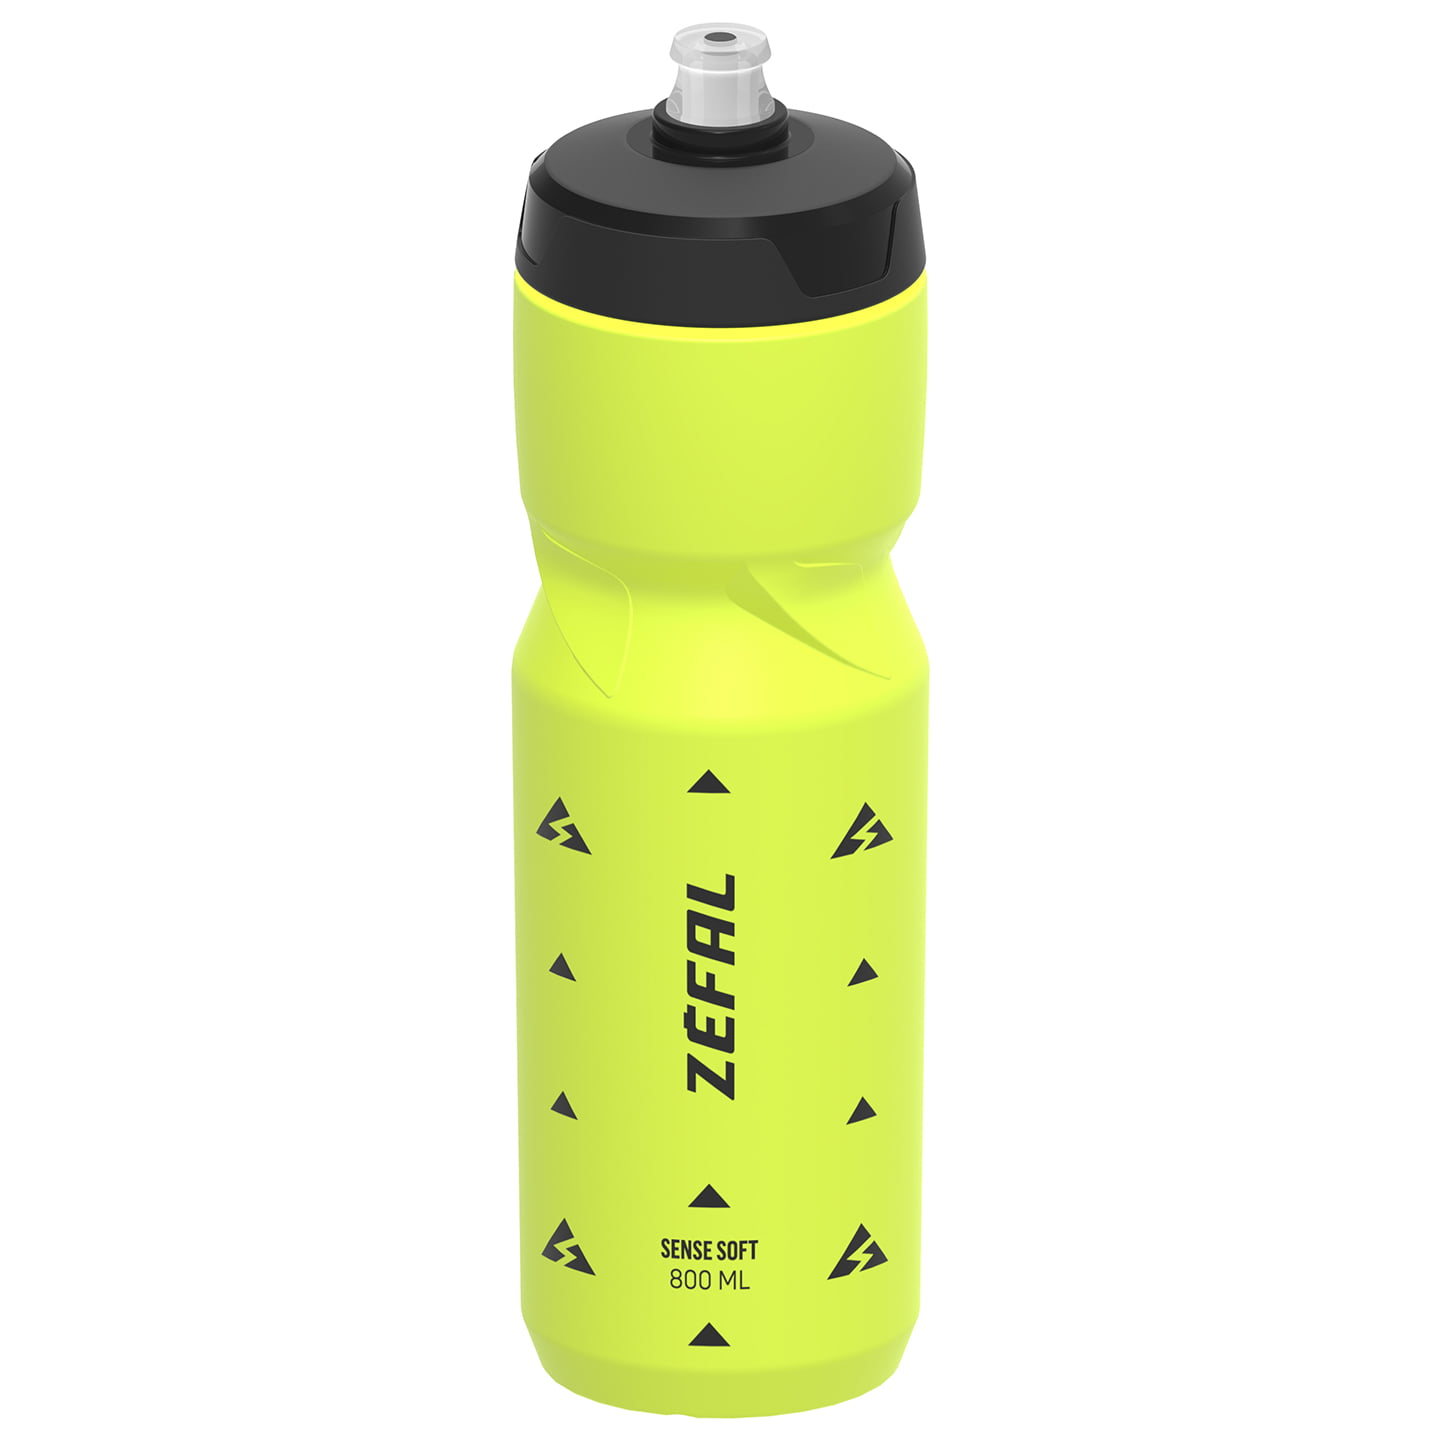 ZEFAL Sense Soft 800 ml Bottle Water Bottle, Bike bottle, Bike accessories